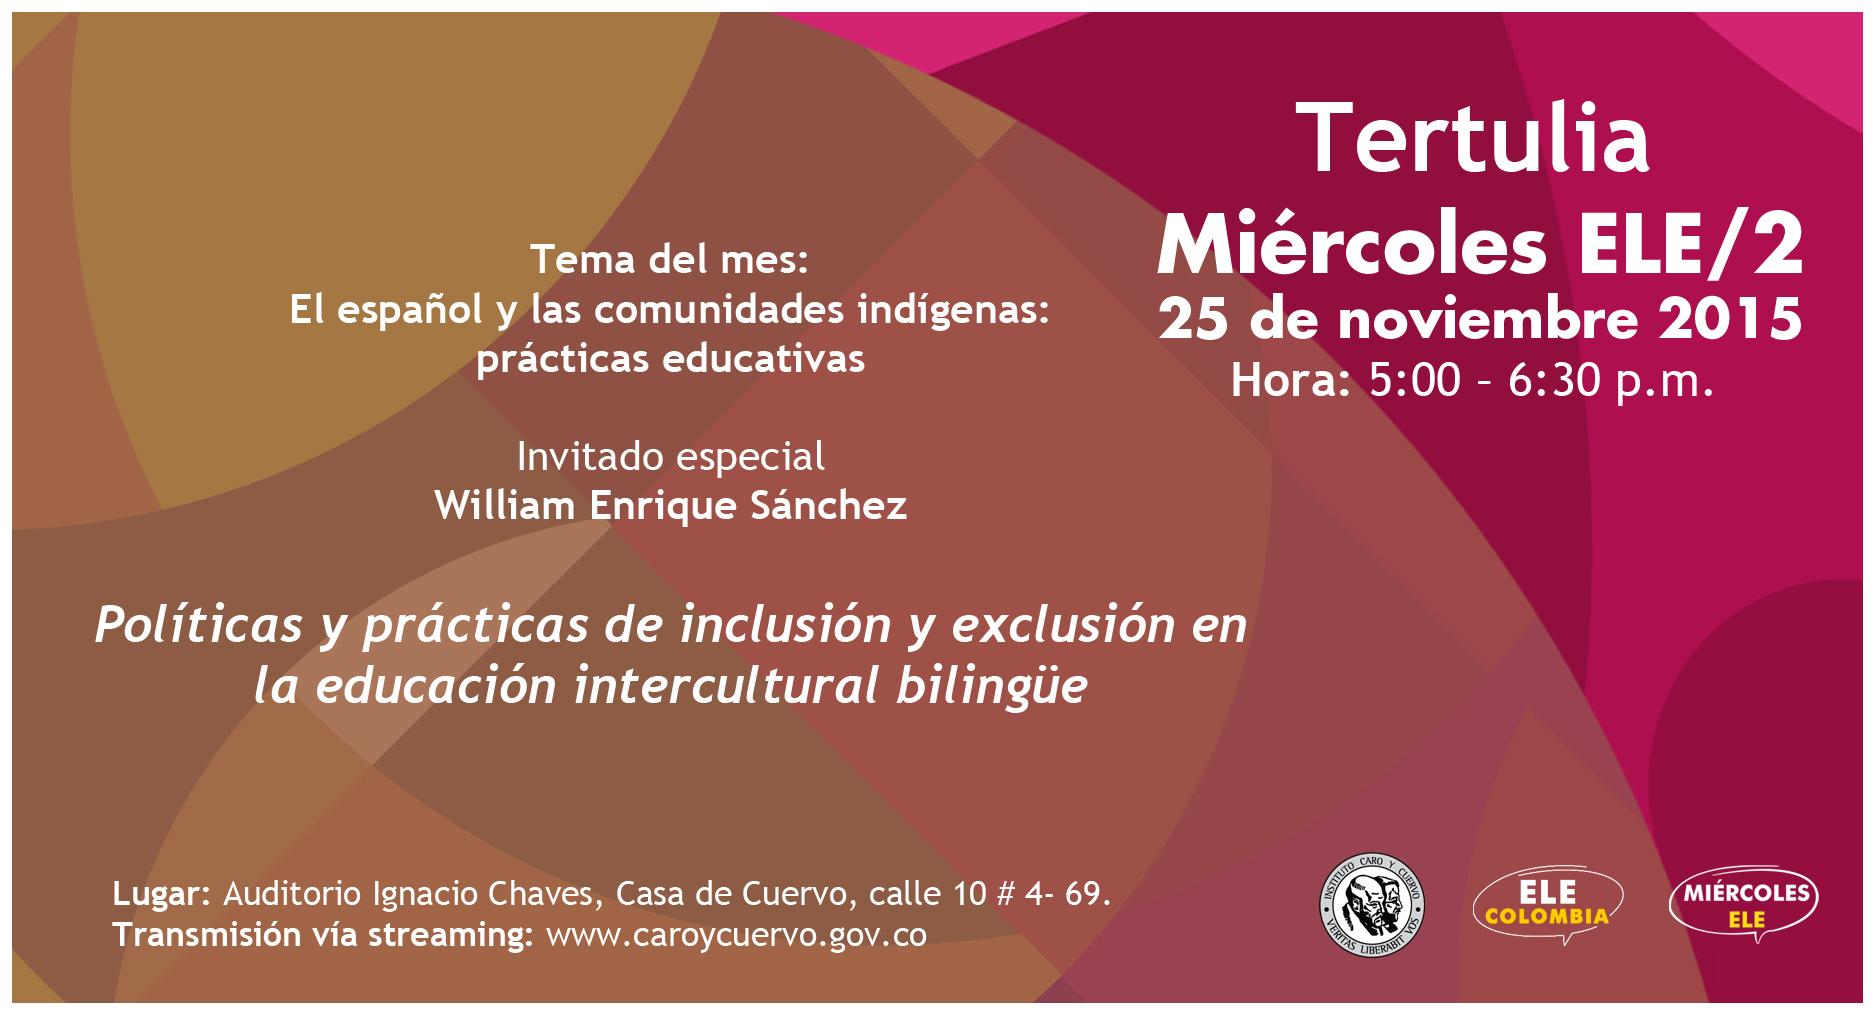 Conversatorio 52 -  Miércoles ELE/2: Tertulia - Políticas y prácticas de inclusión y exclusión en la educación intercultural bilingüe